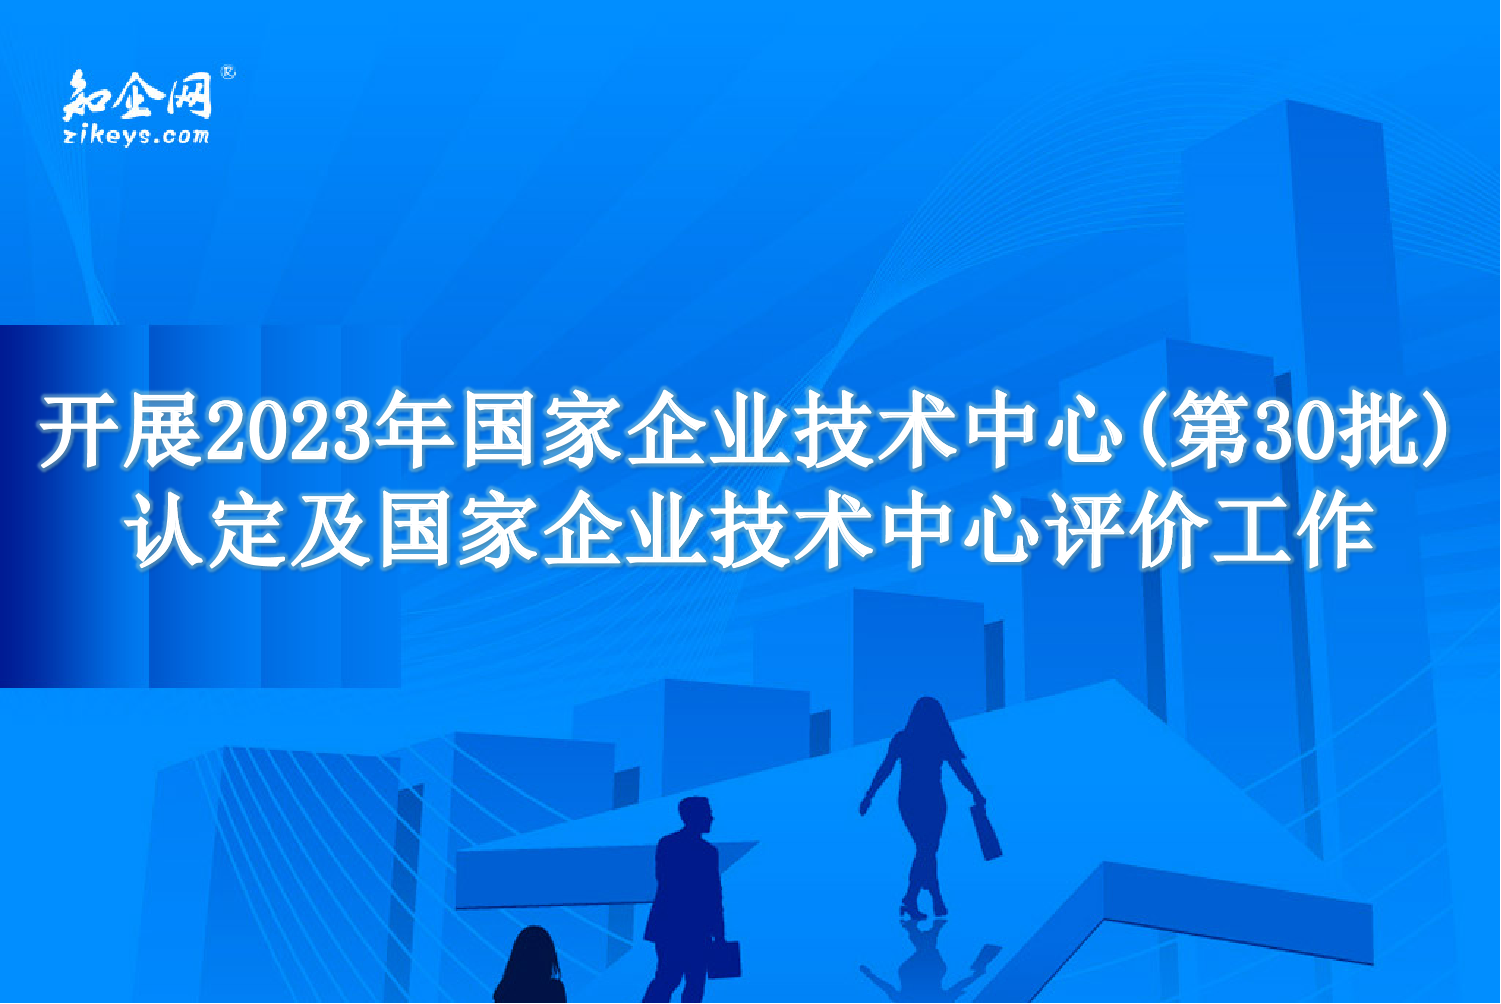 开展2023年国家企业技术中心(第30批)认定及国家企业技术中心评价工作